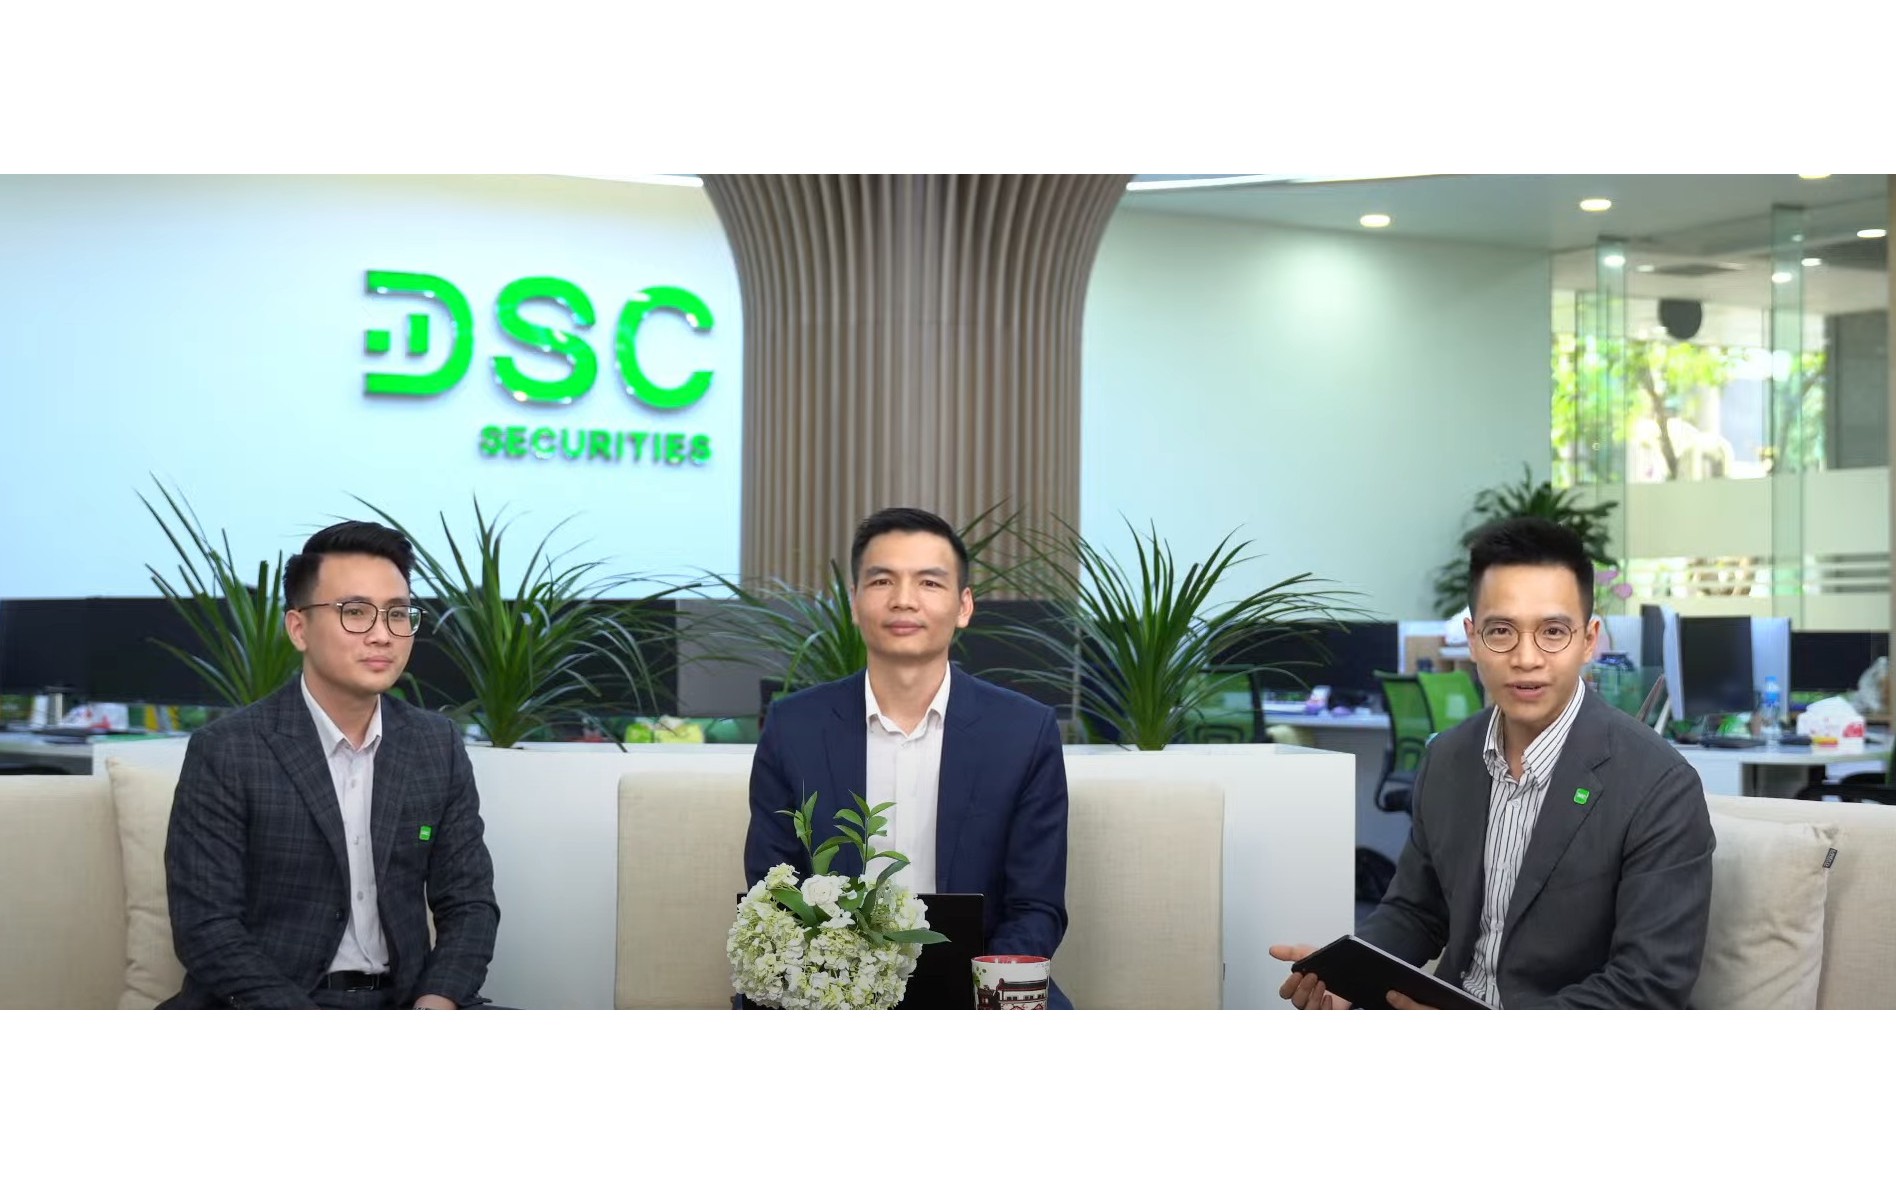 Chứng khoán DSC tổ chức thành công hội nghị nhà đầu tư, hé lộ lợi nhuận quý 1 tăng trưởng ấn tượng